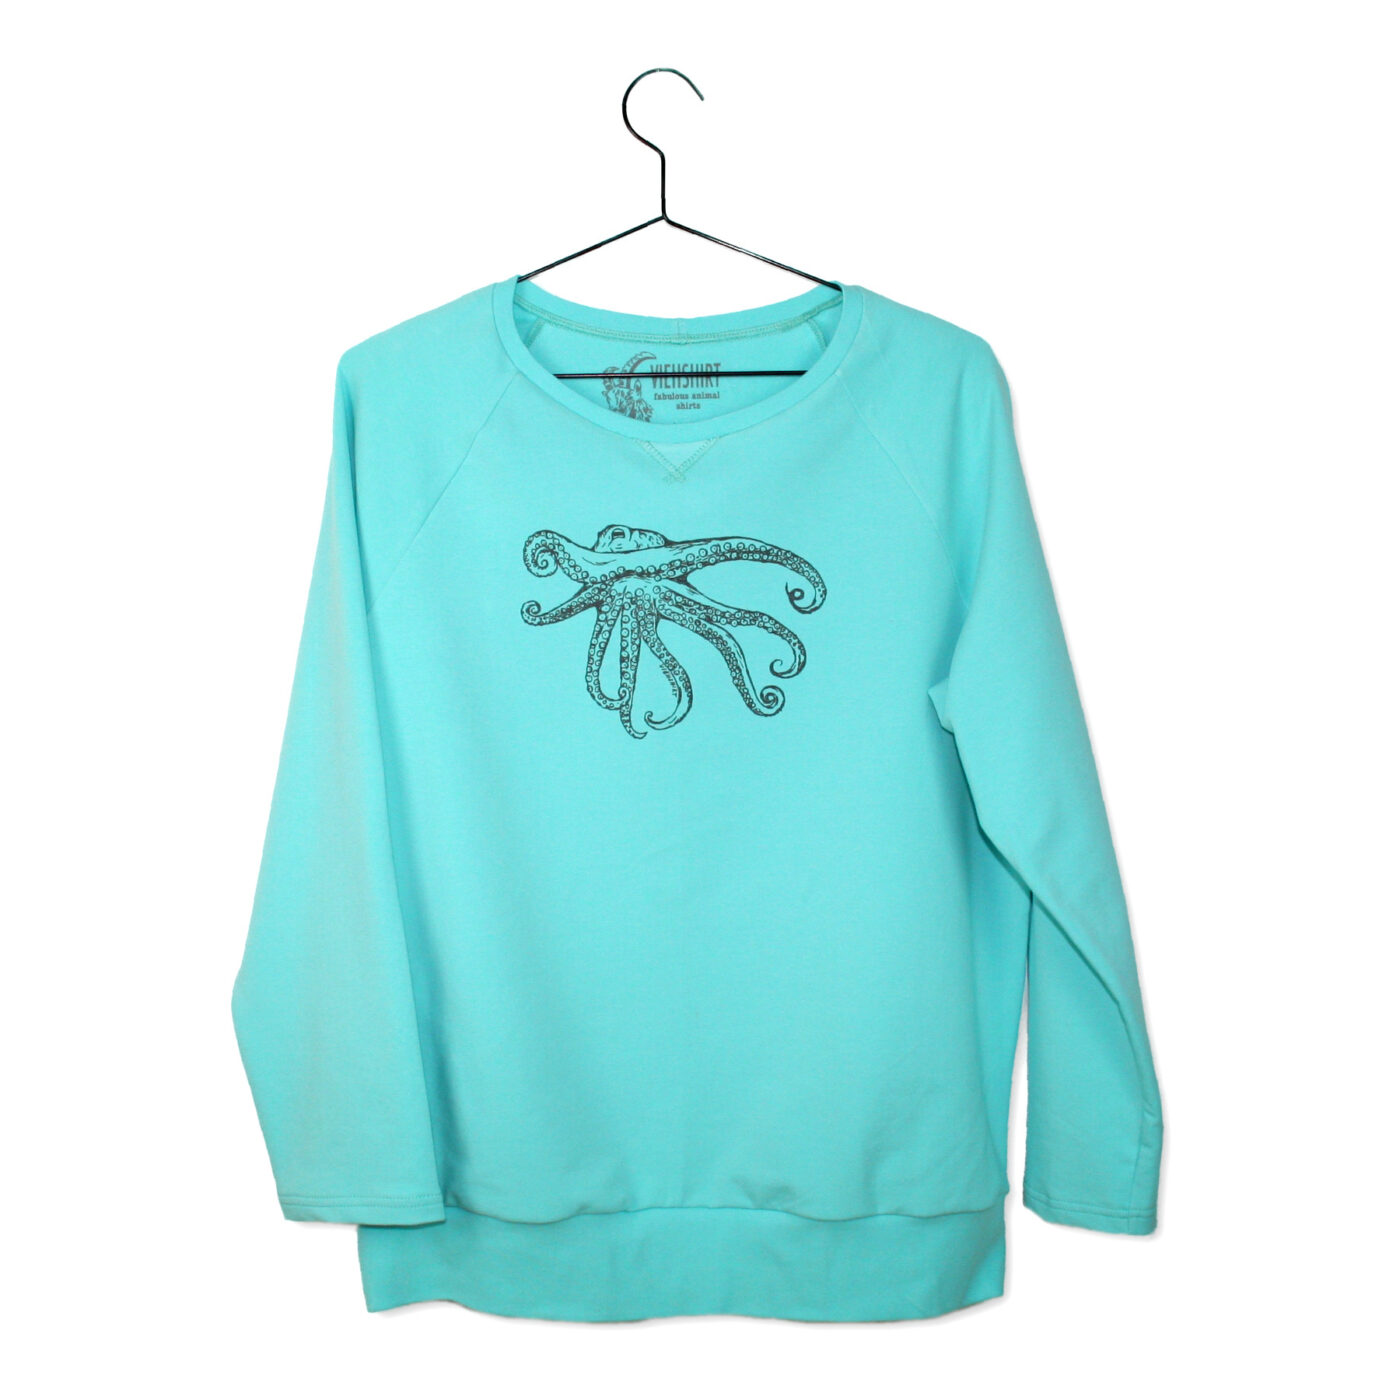 Blauer Sweater mit Siebdruckmotiv Oktopus